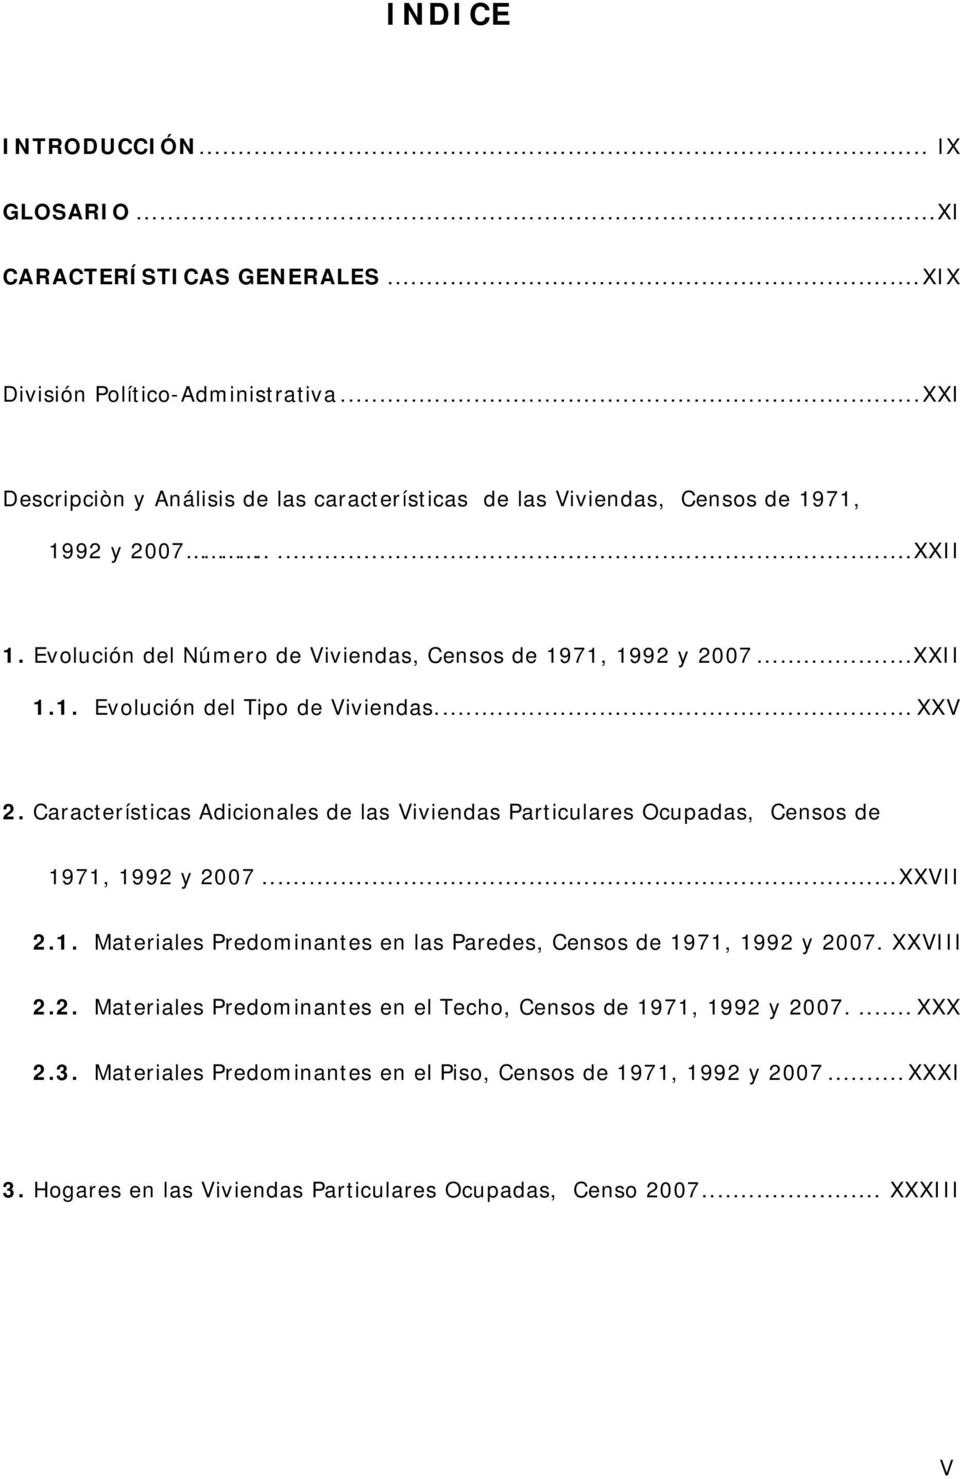 .. XXV 2. Características Adicionales de las Viviendas Particulares Ocupadas, Censos de 1971, 1992 y 2007...XXVII 2.1. Materiales Predominantes en las Paredes, Censos de 1971, 1992 y 2007.